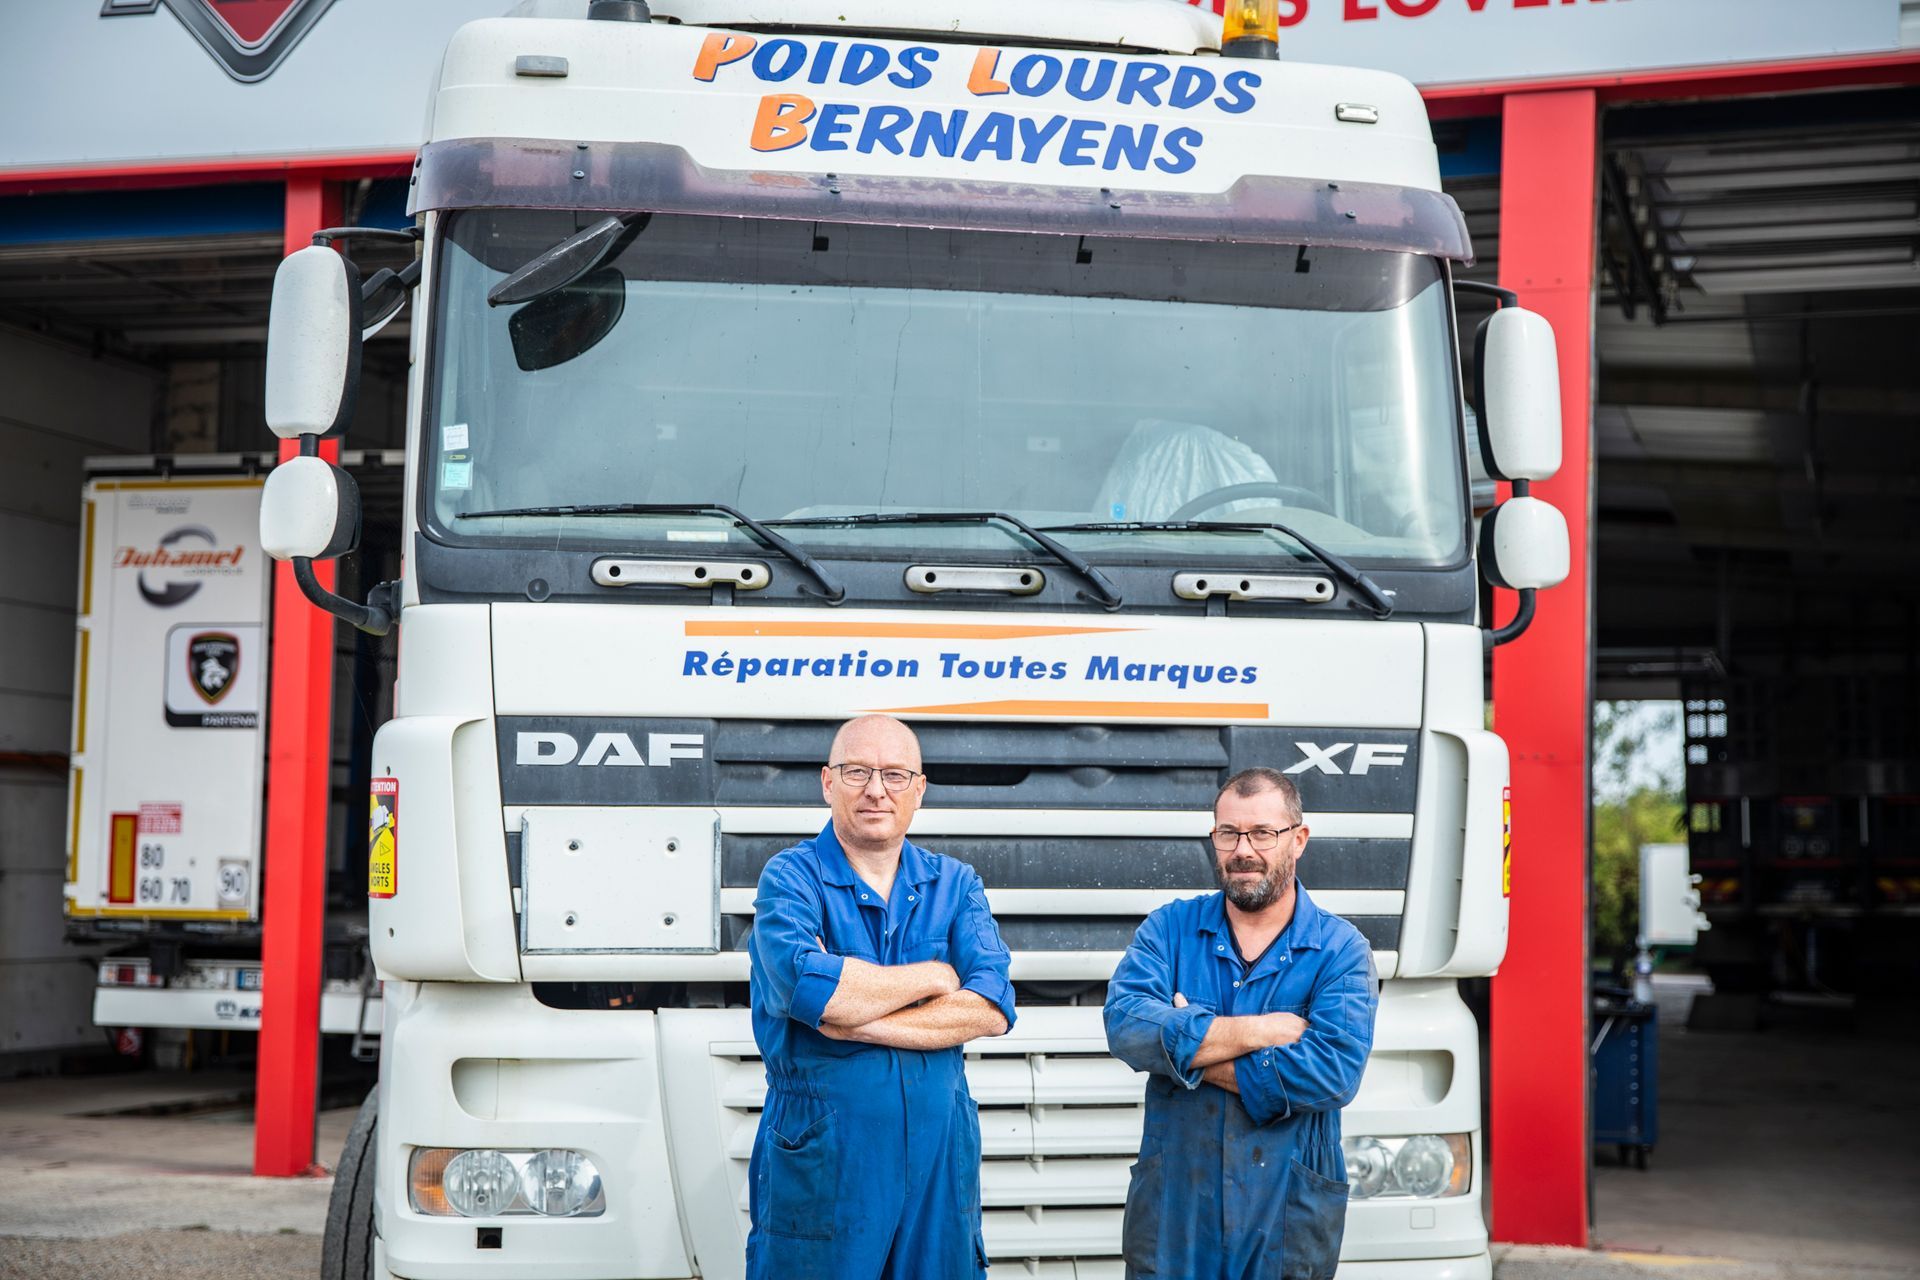 Deux employés devant le camion poids lourds Bernayens